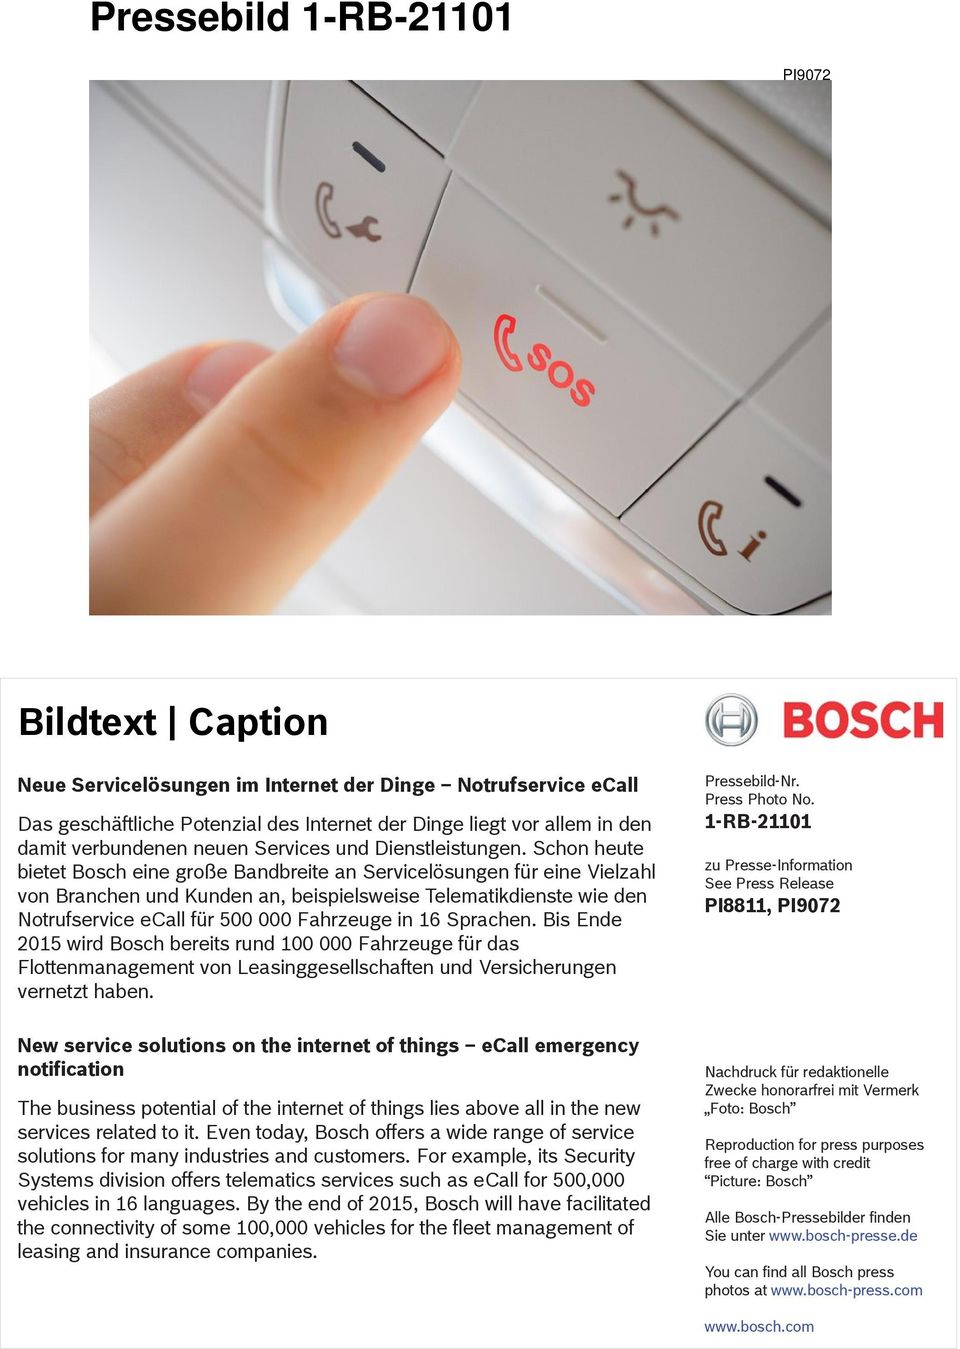 Schon heute bietet Bosch eine große Bandbreite an Servicelösungen für eine Vielzahl von Branchen und Kunden an, beispielsweise Telematikdienste wie den Notrufservice ecall für 500 000 Fahrzeuge in 16